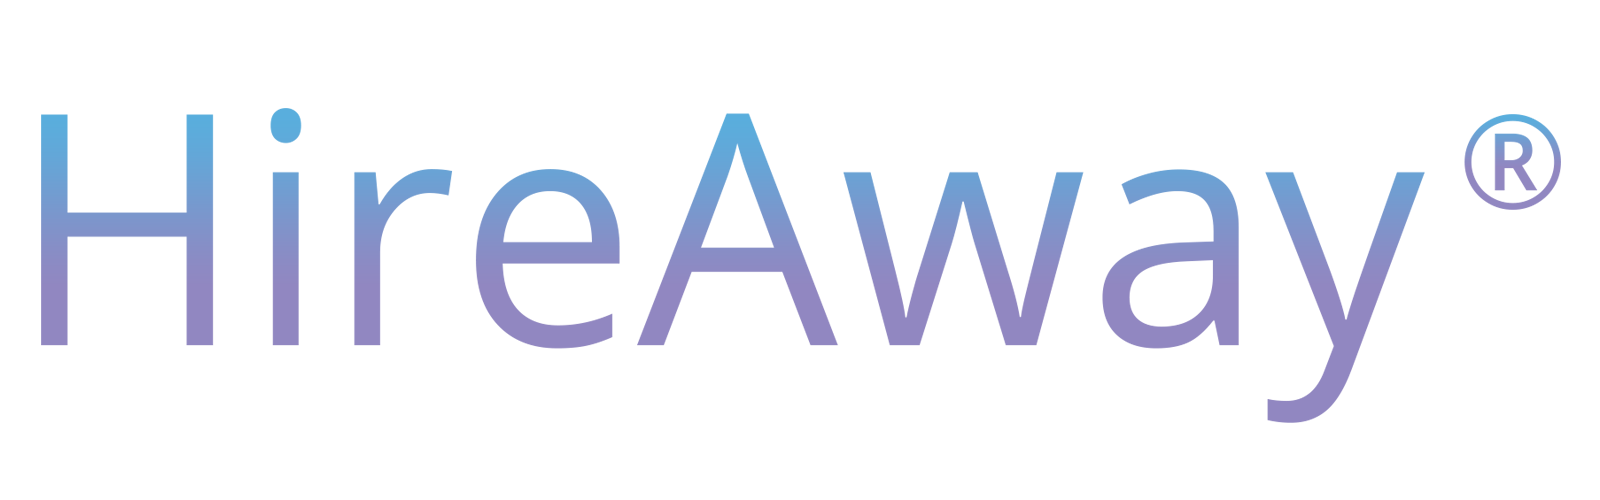 Hireaway-logo1-1